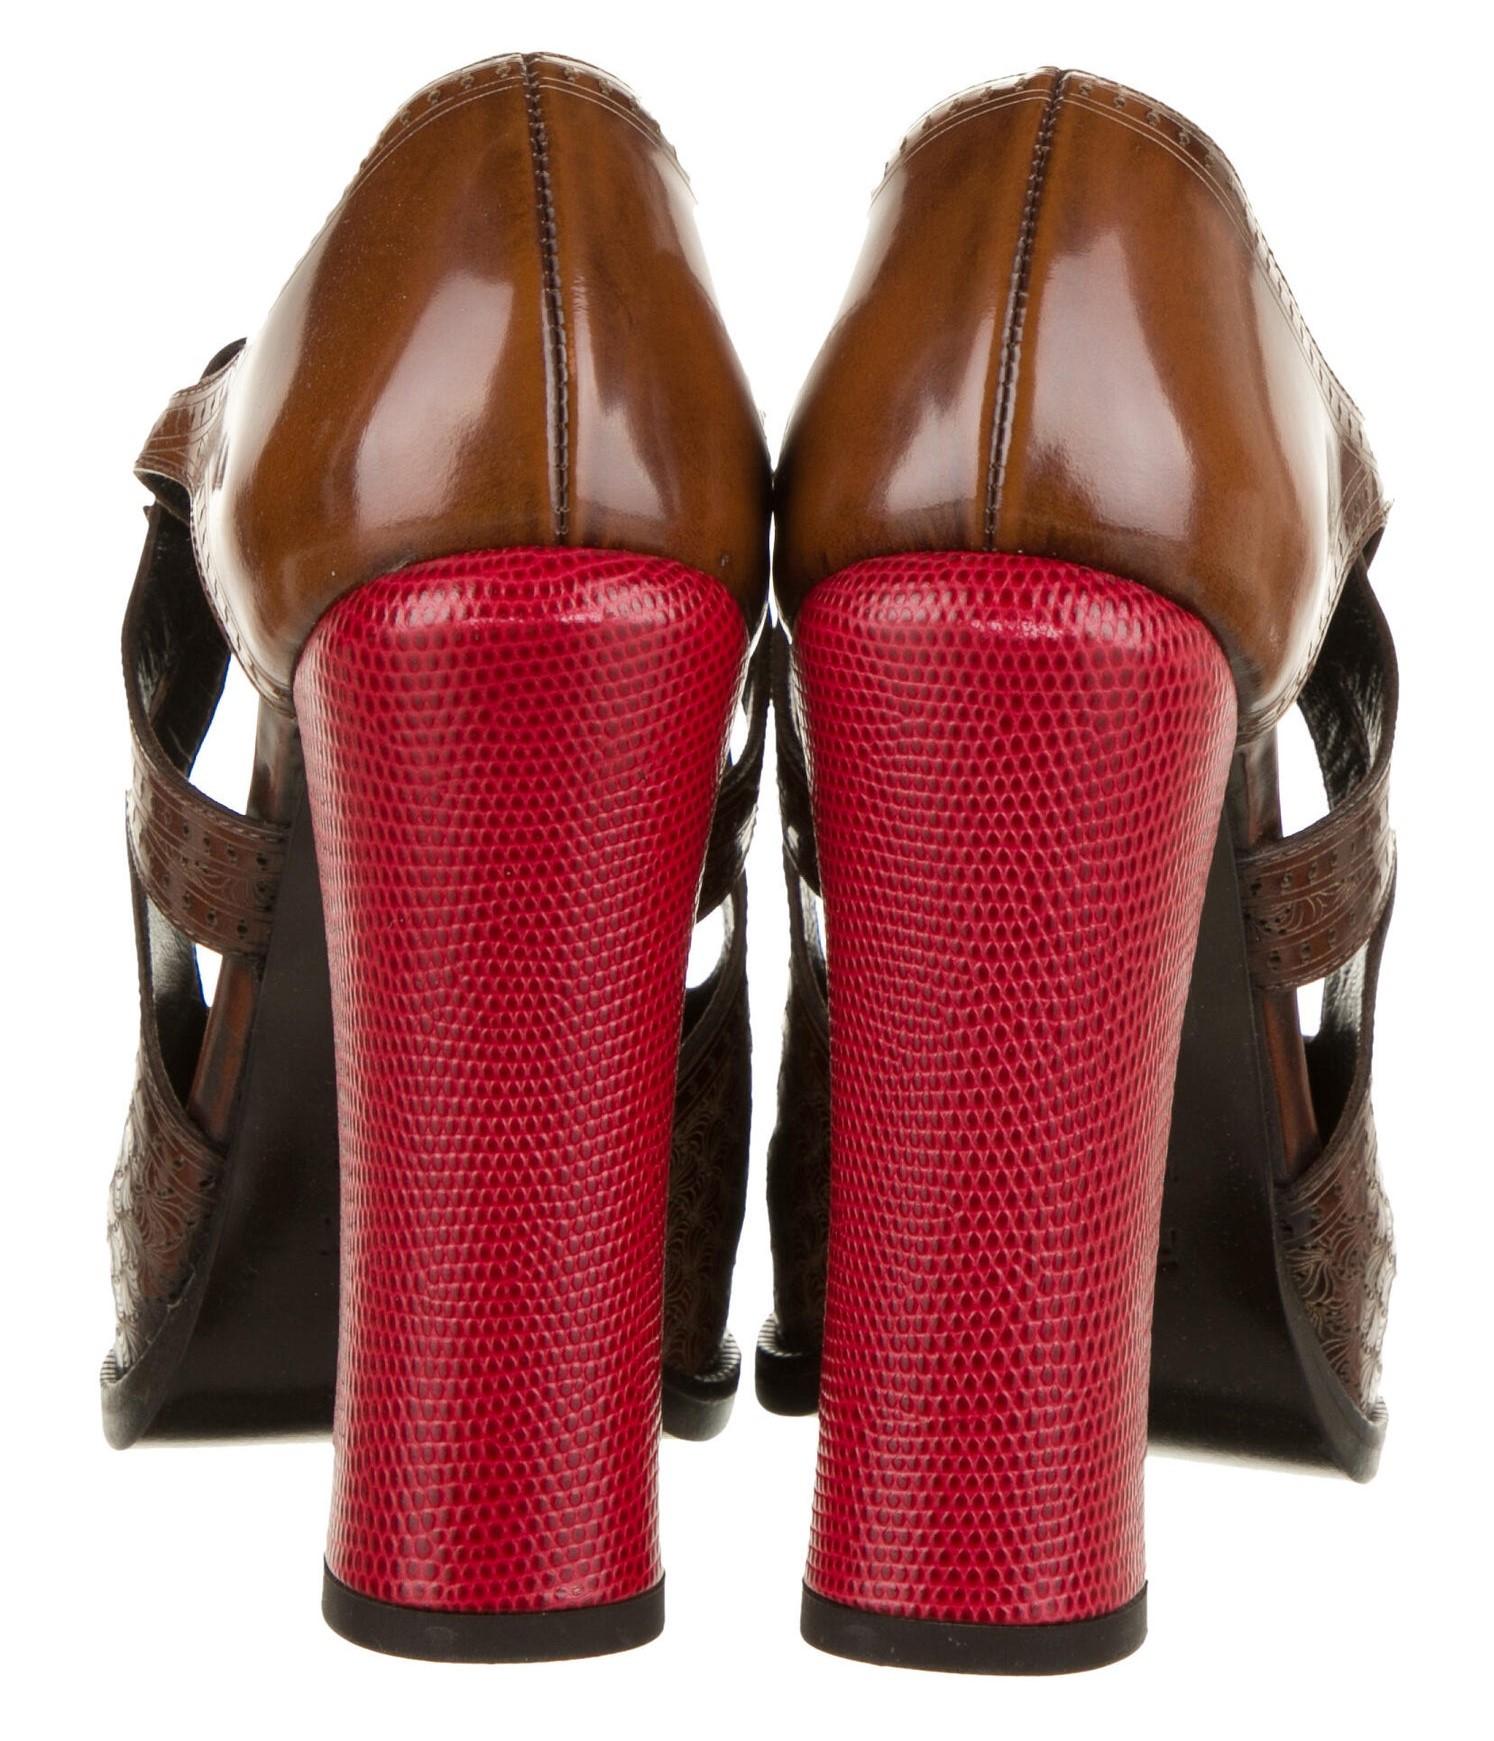 New Fendi Karl Lagerfeld F/W 2011 Leather Platform Pumps Heels Sz 37.5 $1975 3